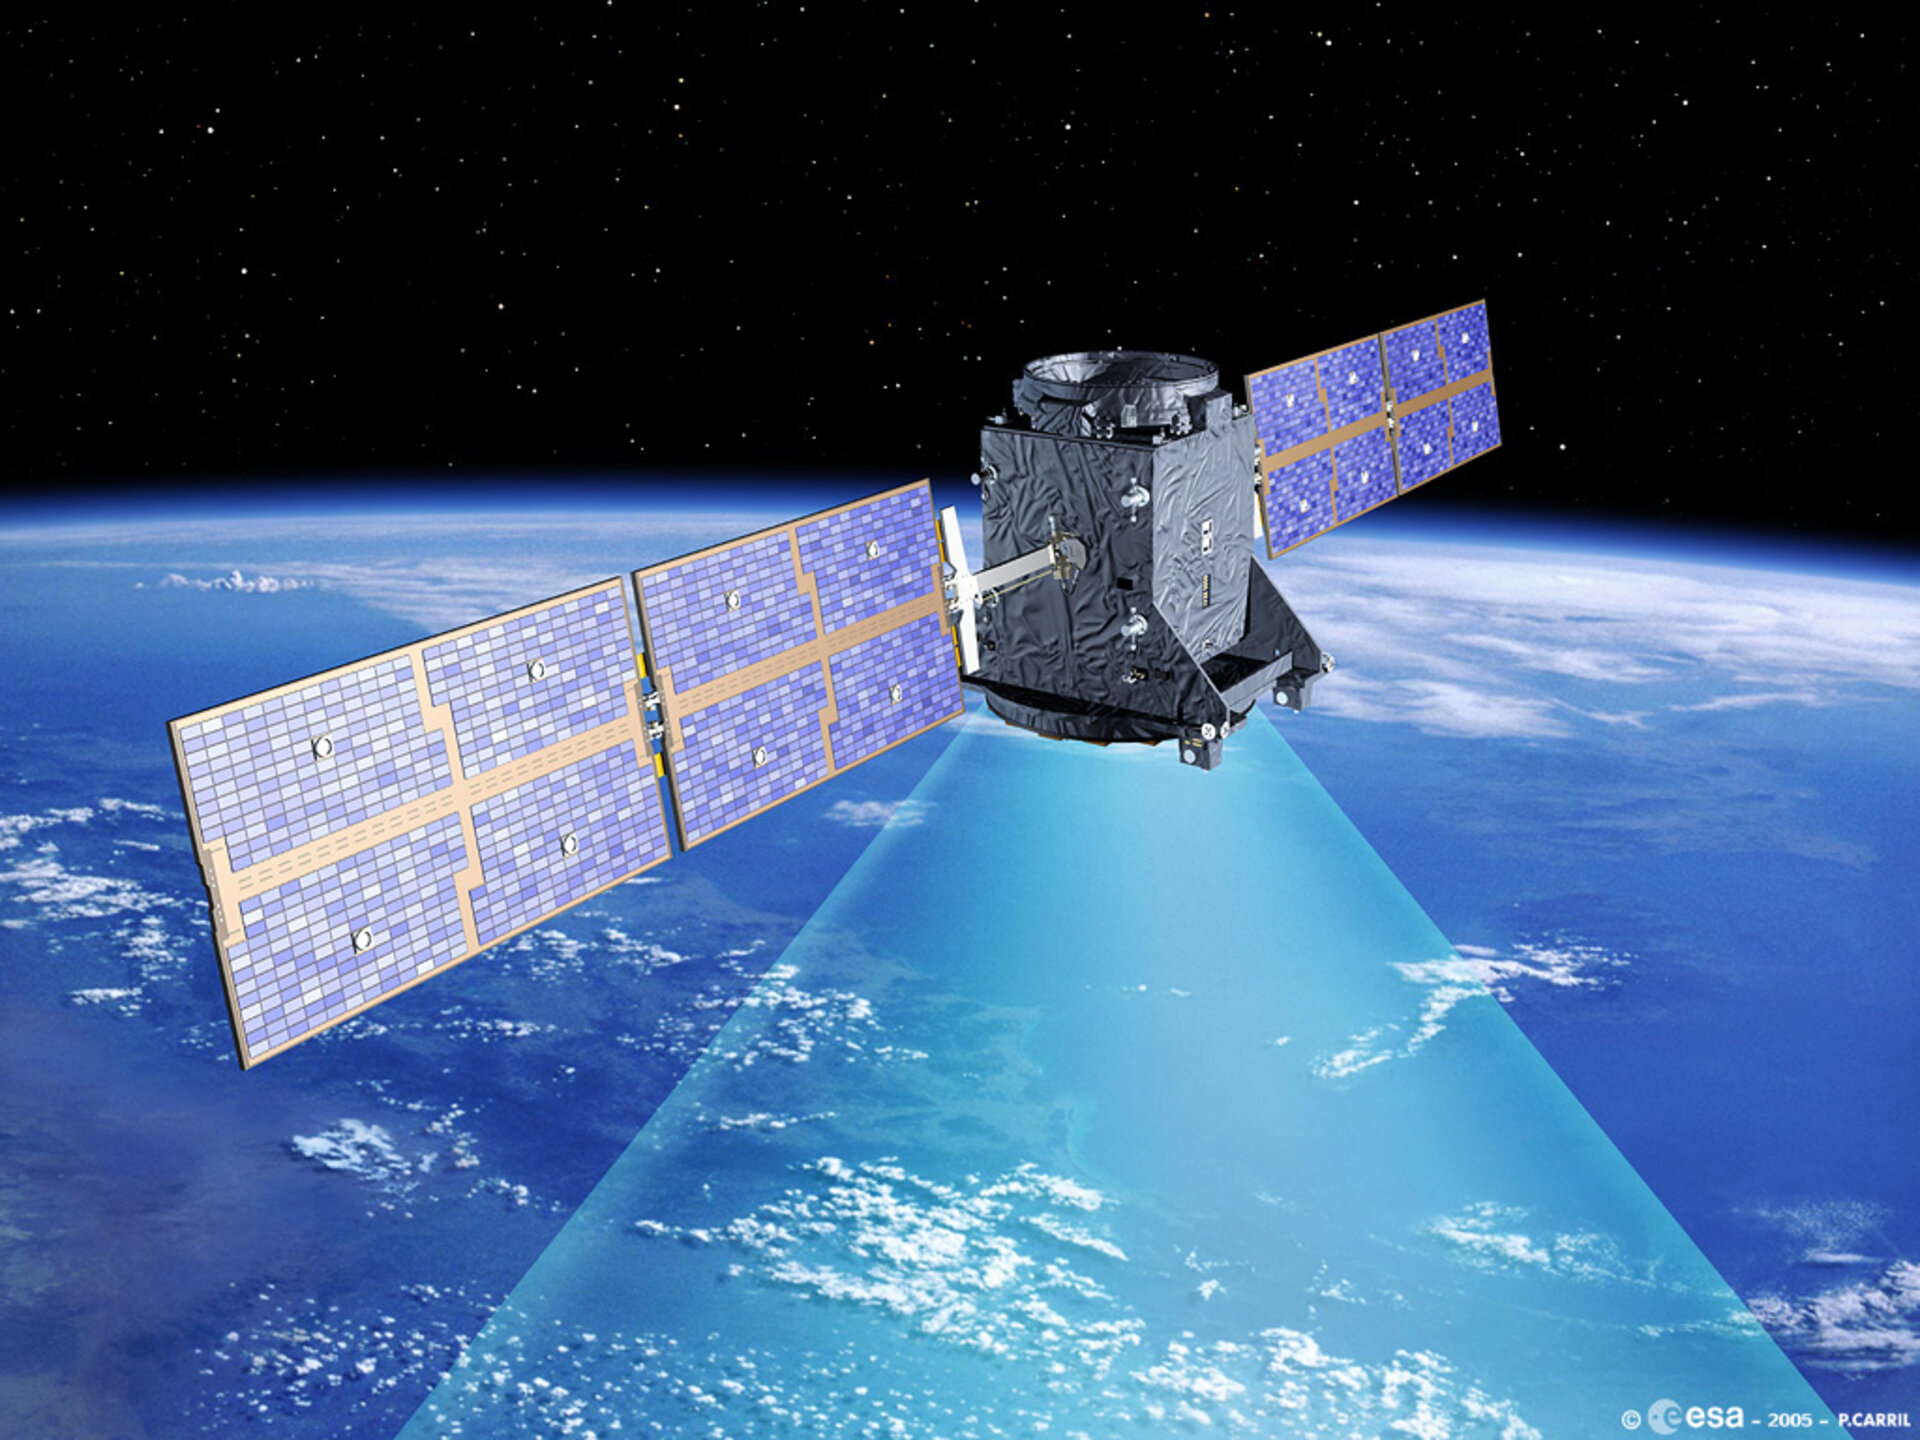 Signaler fra satellitter (her europæiske GSTB) gør det muligt at bestemme sin egen position på jorden nøjagtigt.